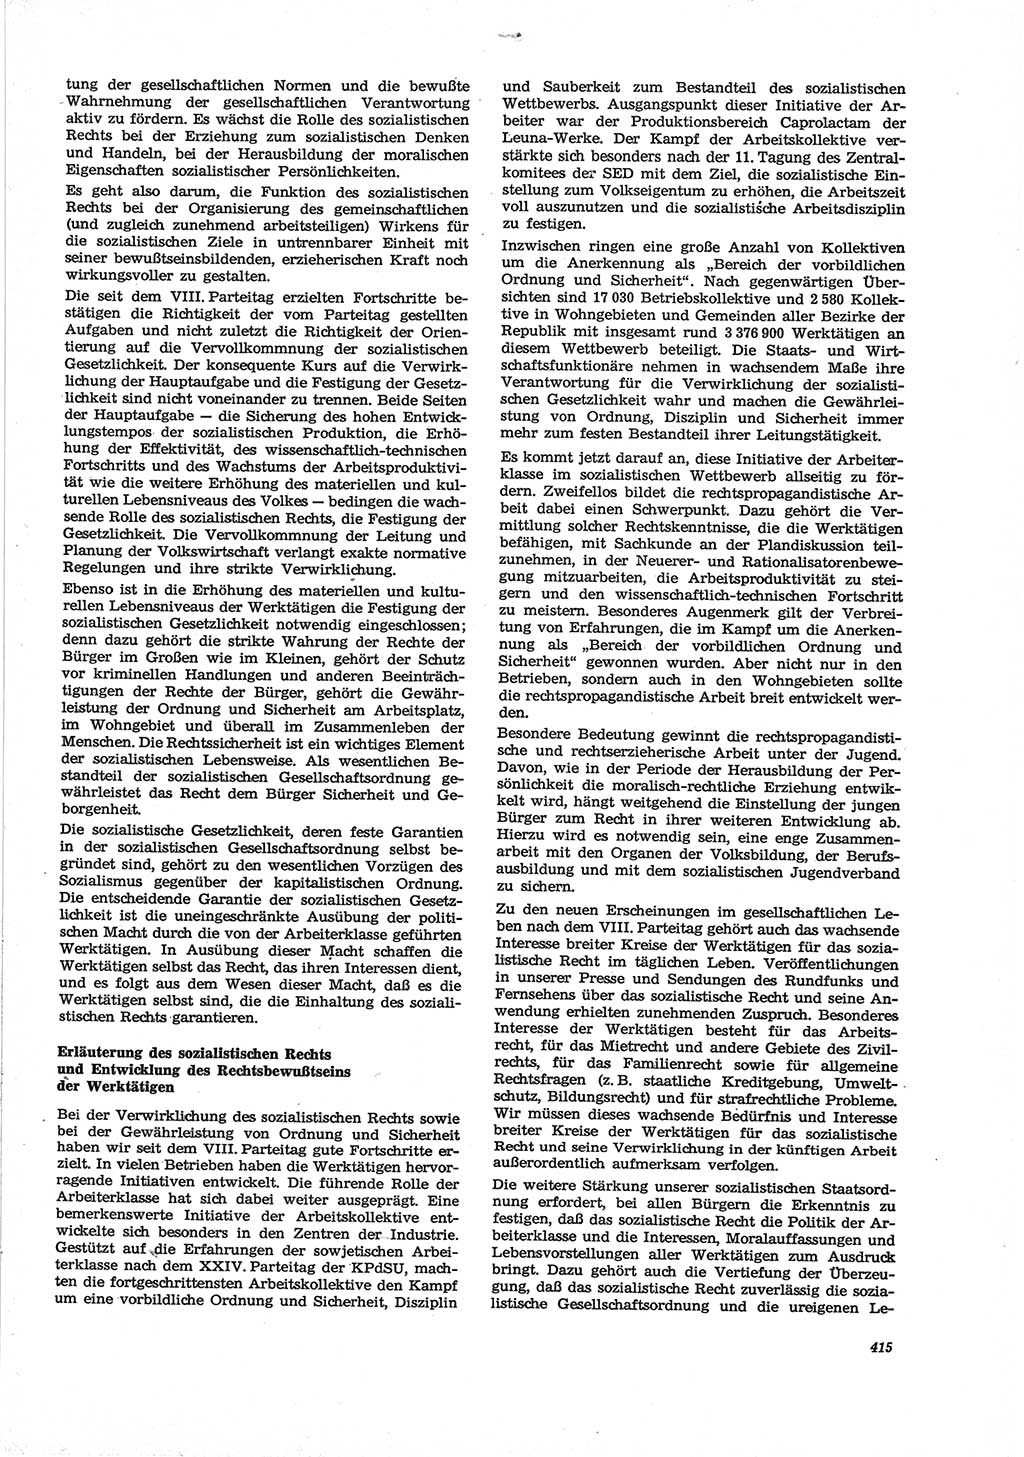 Neue Justiz (NJ), Zeitschrift für Recht und Rechtswissenschaft [Deutsche Demokratische Republik (DDR)], 28. Jahrgang 1974, Seite 415 (NJ DDR 1974, S. 415)